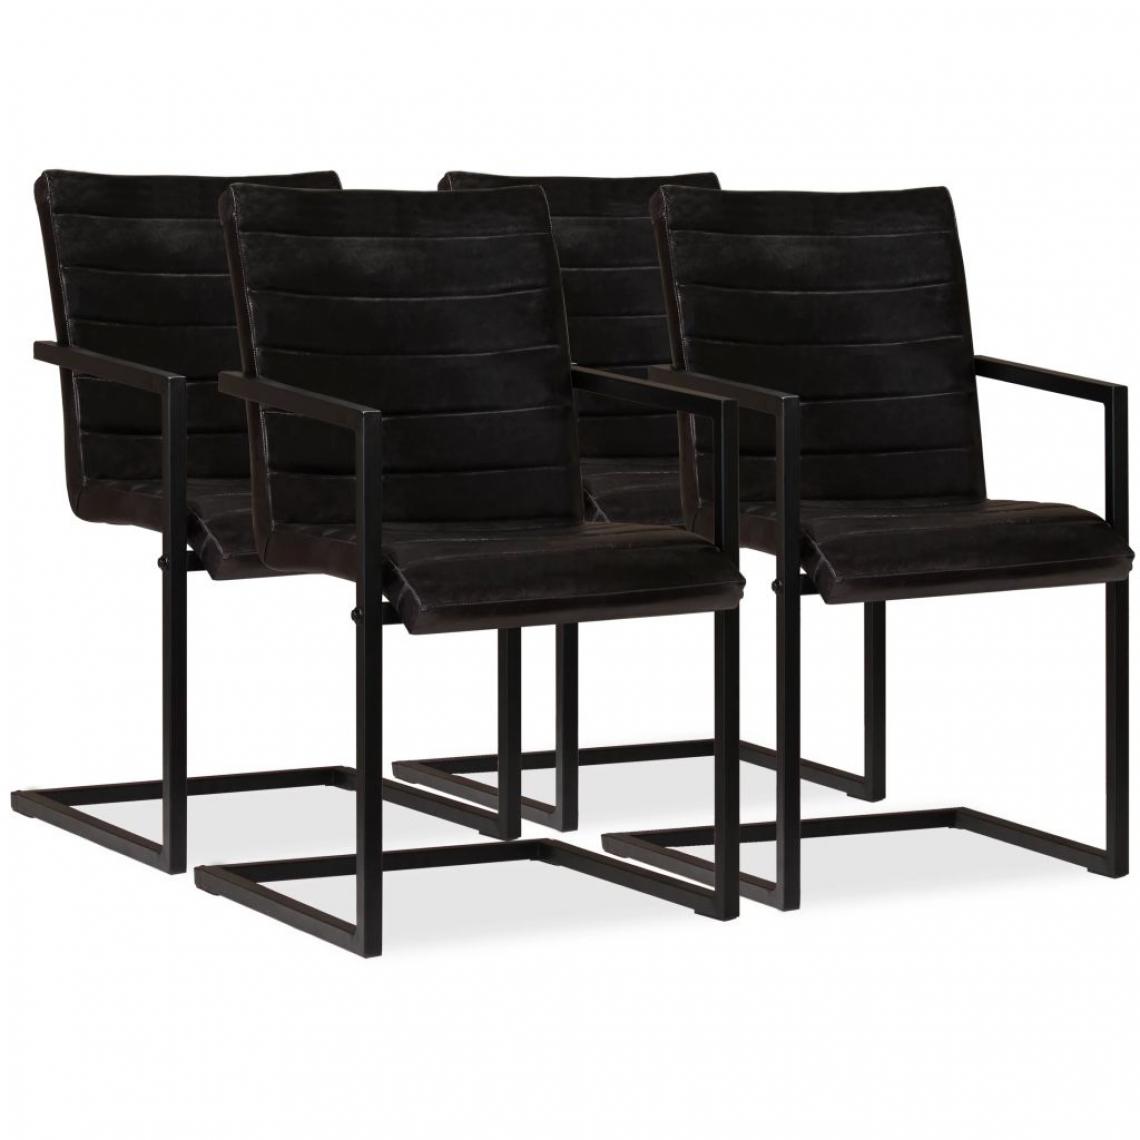 Decoshop26 - Lot de 4 chaises de salle à manger cuisine design rétro cuir véritable anthracite CDS021196 - Chaises